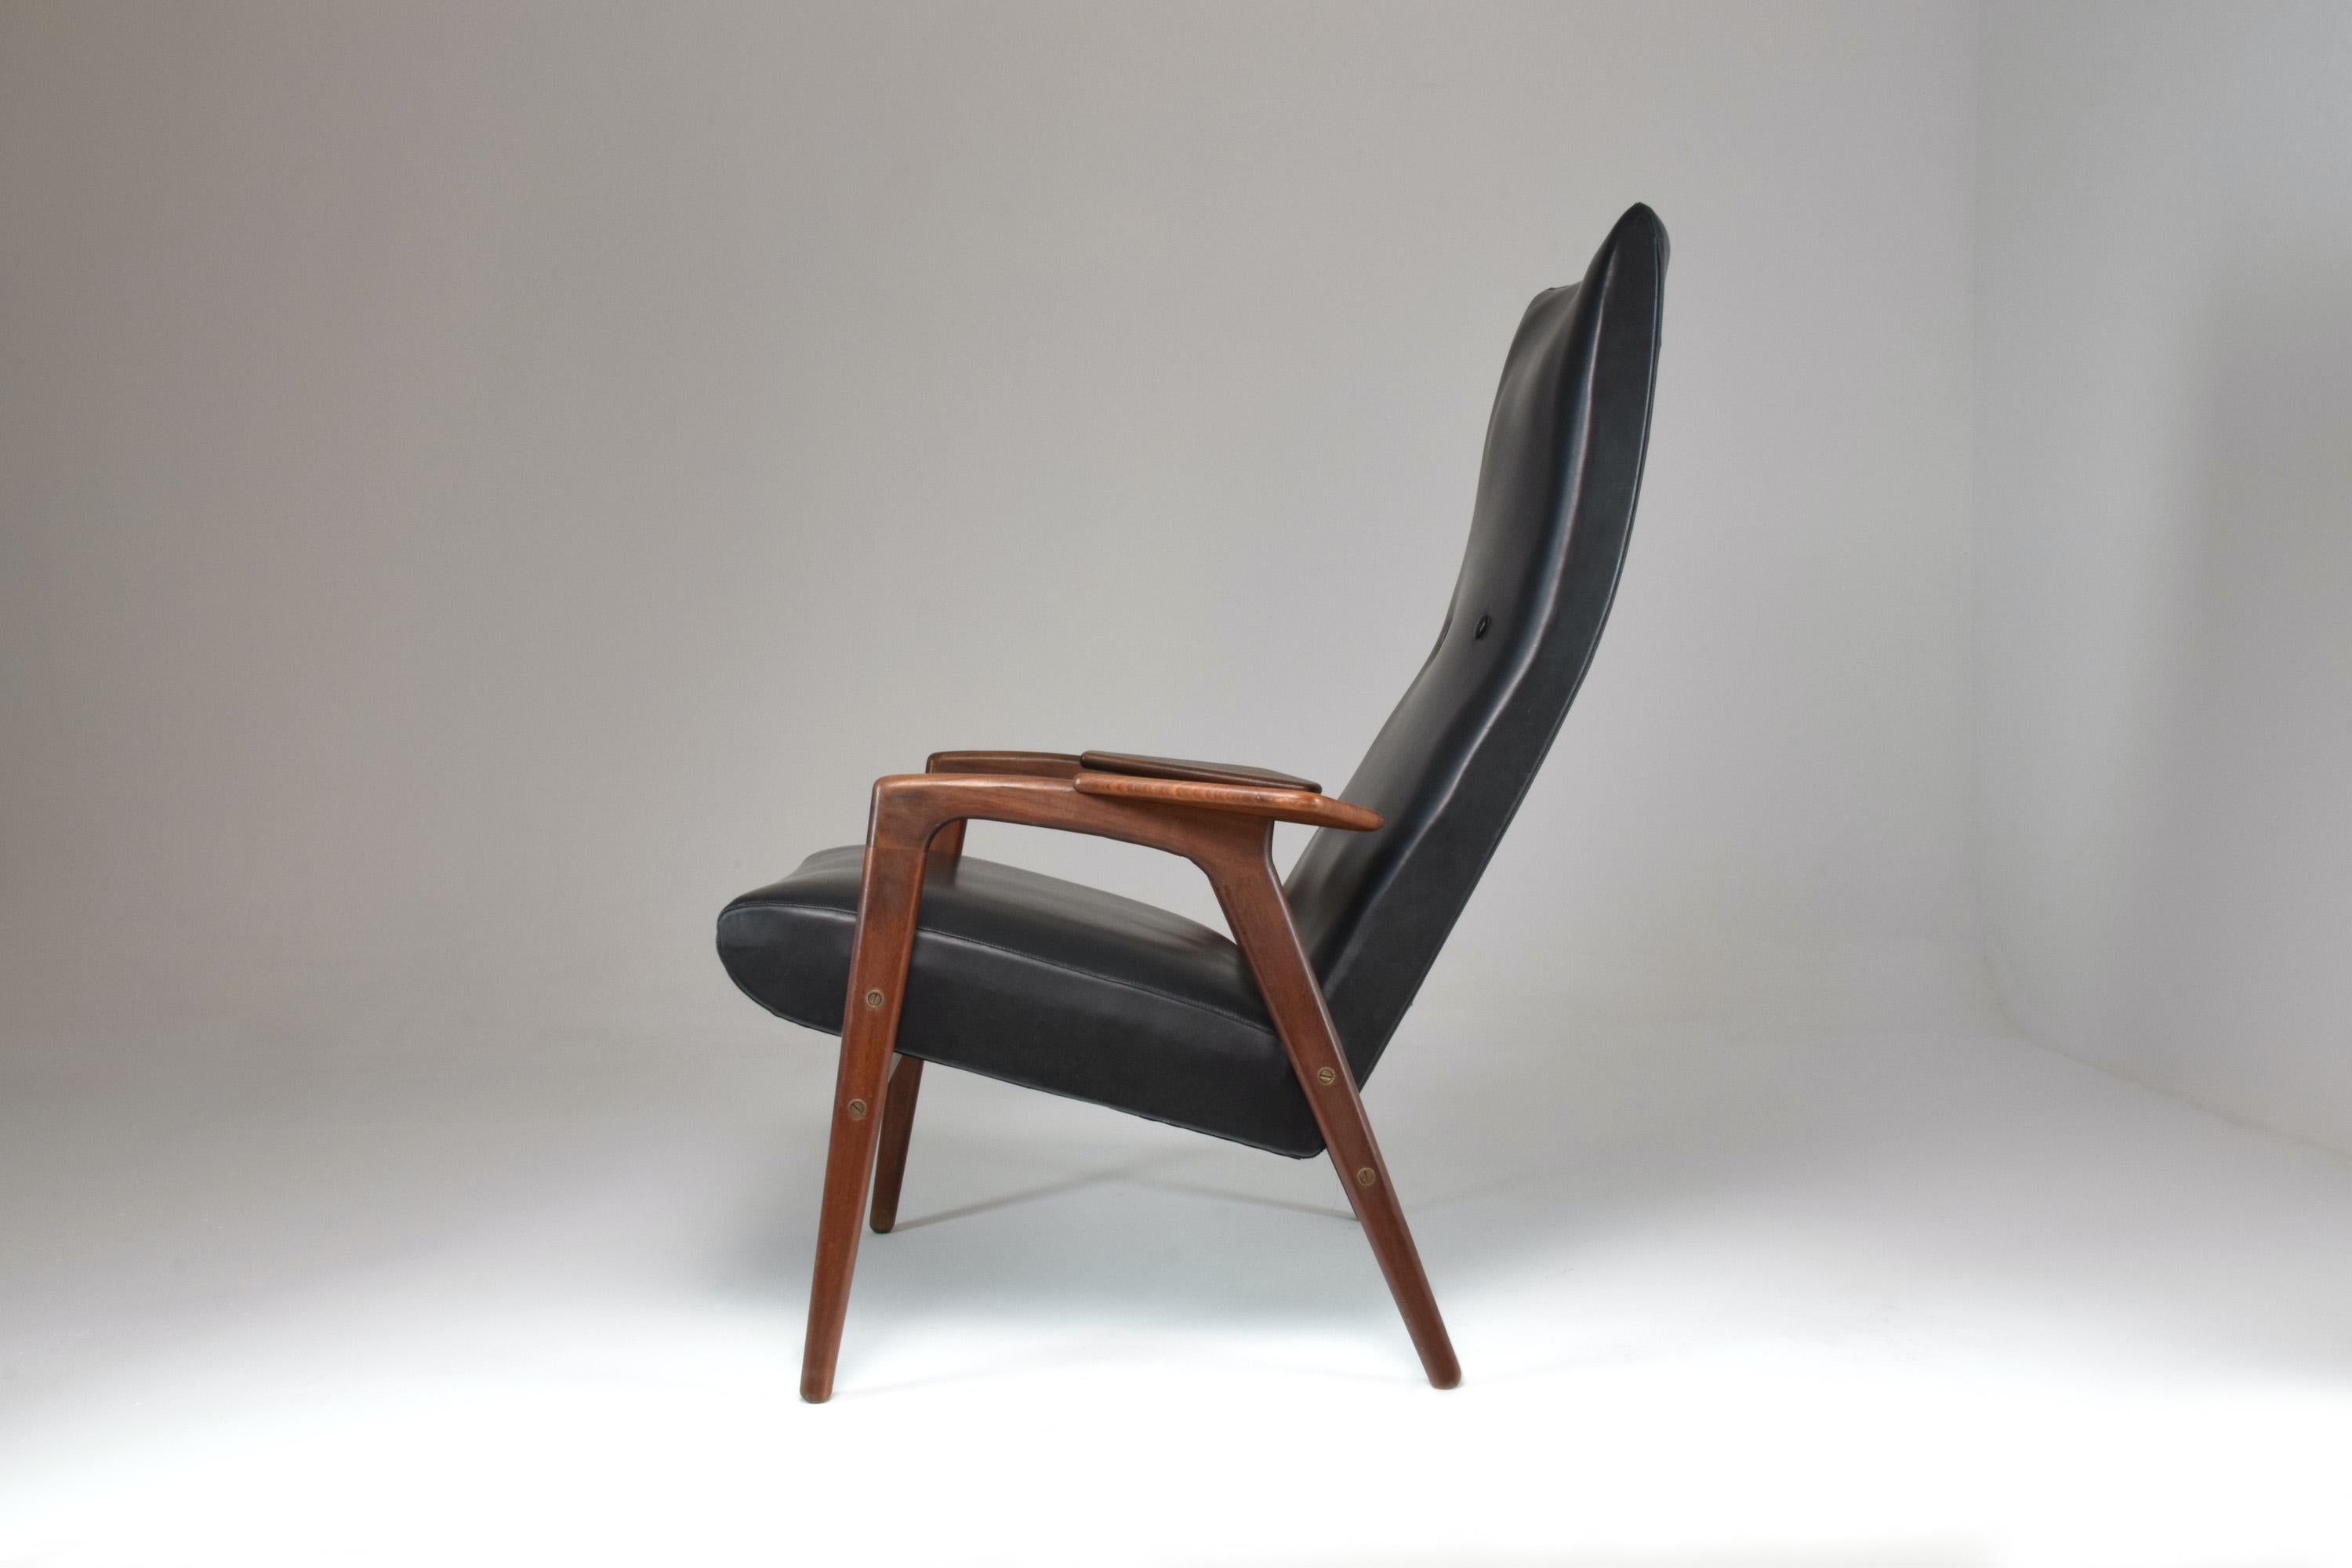 Der bemerkenswerte dänische Loungesessel Ruster des schwedischen Designers Yngve Ekström, der in den 1960er Jahren von Pastoe herausgegeben wurde.
Das Leder ist im Originalzustand, der Rahmen wurde fachmännisch nachbearbeitet. 
Yngve Ekstrôm war ein